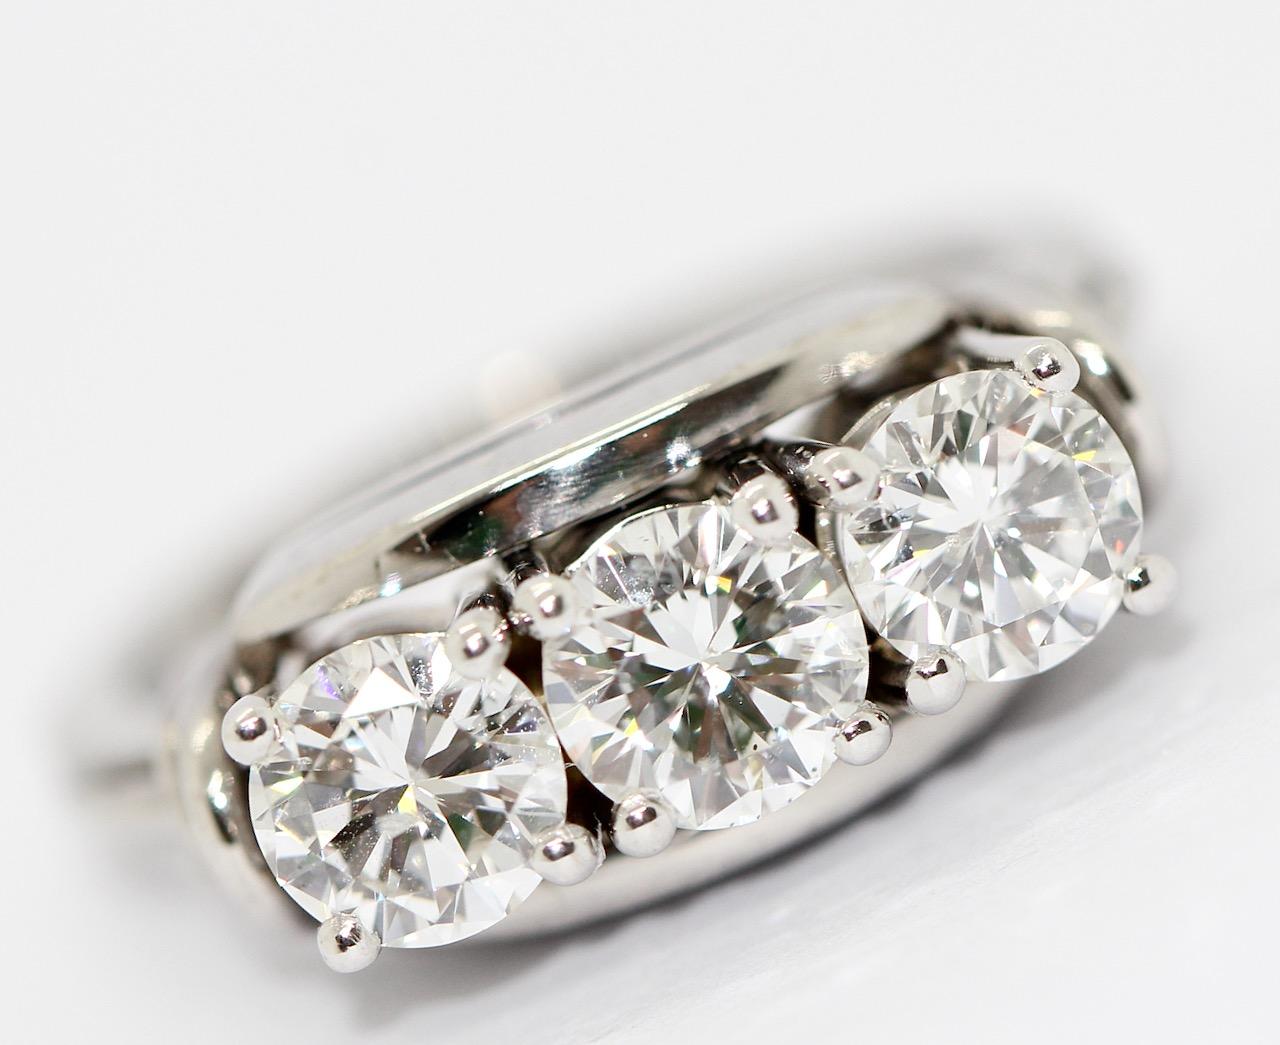 Magnifique bague en diamant sertie de trois solitaires en Brilliante blanc totalisant environ 1,61 carats (0,53 ; 0,57 ; 0,51).

Couleur : Top Wesselton, Clarté : VS/SI

Certificat d'authenticité inclus.